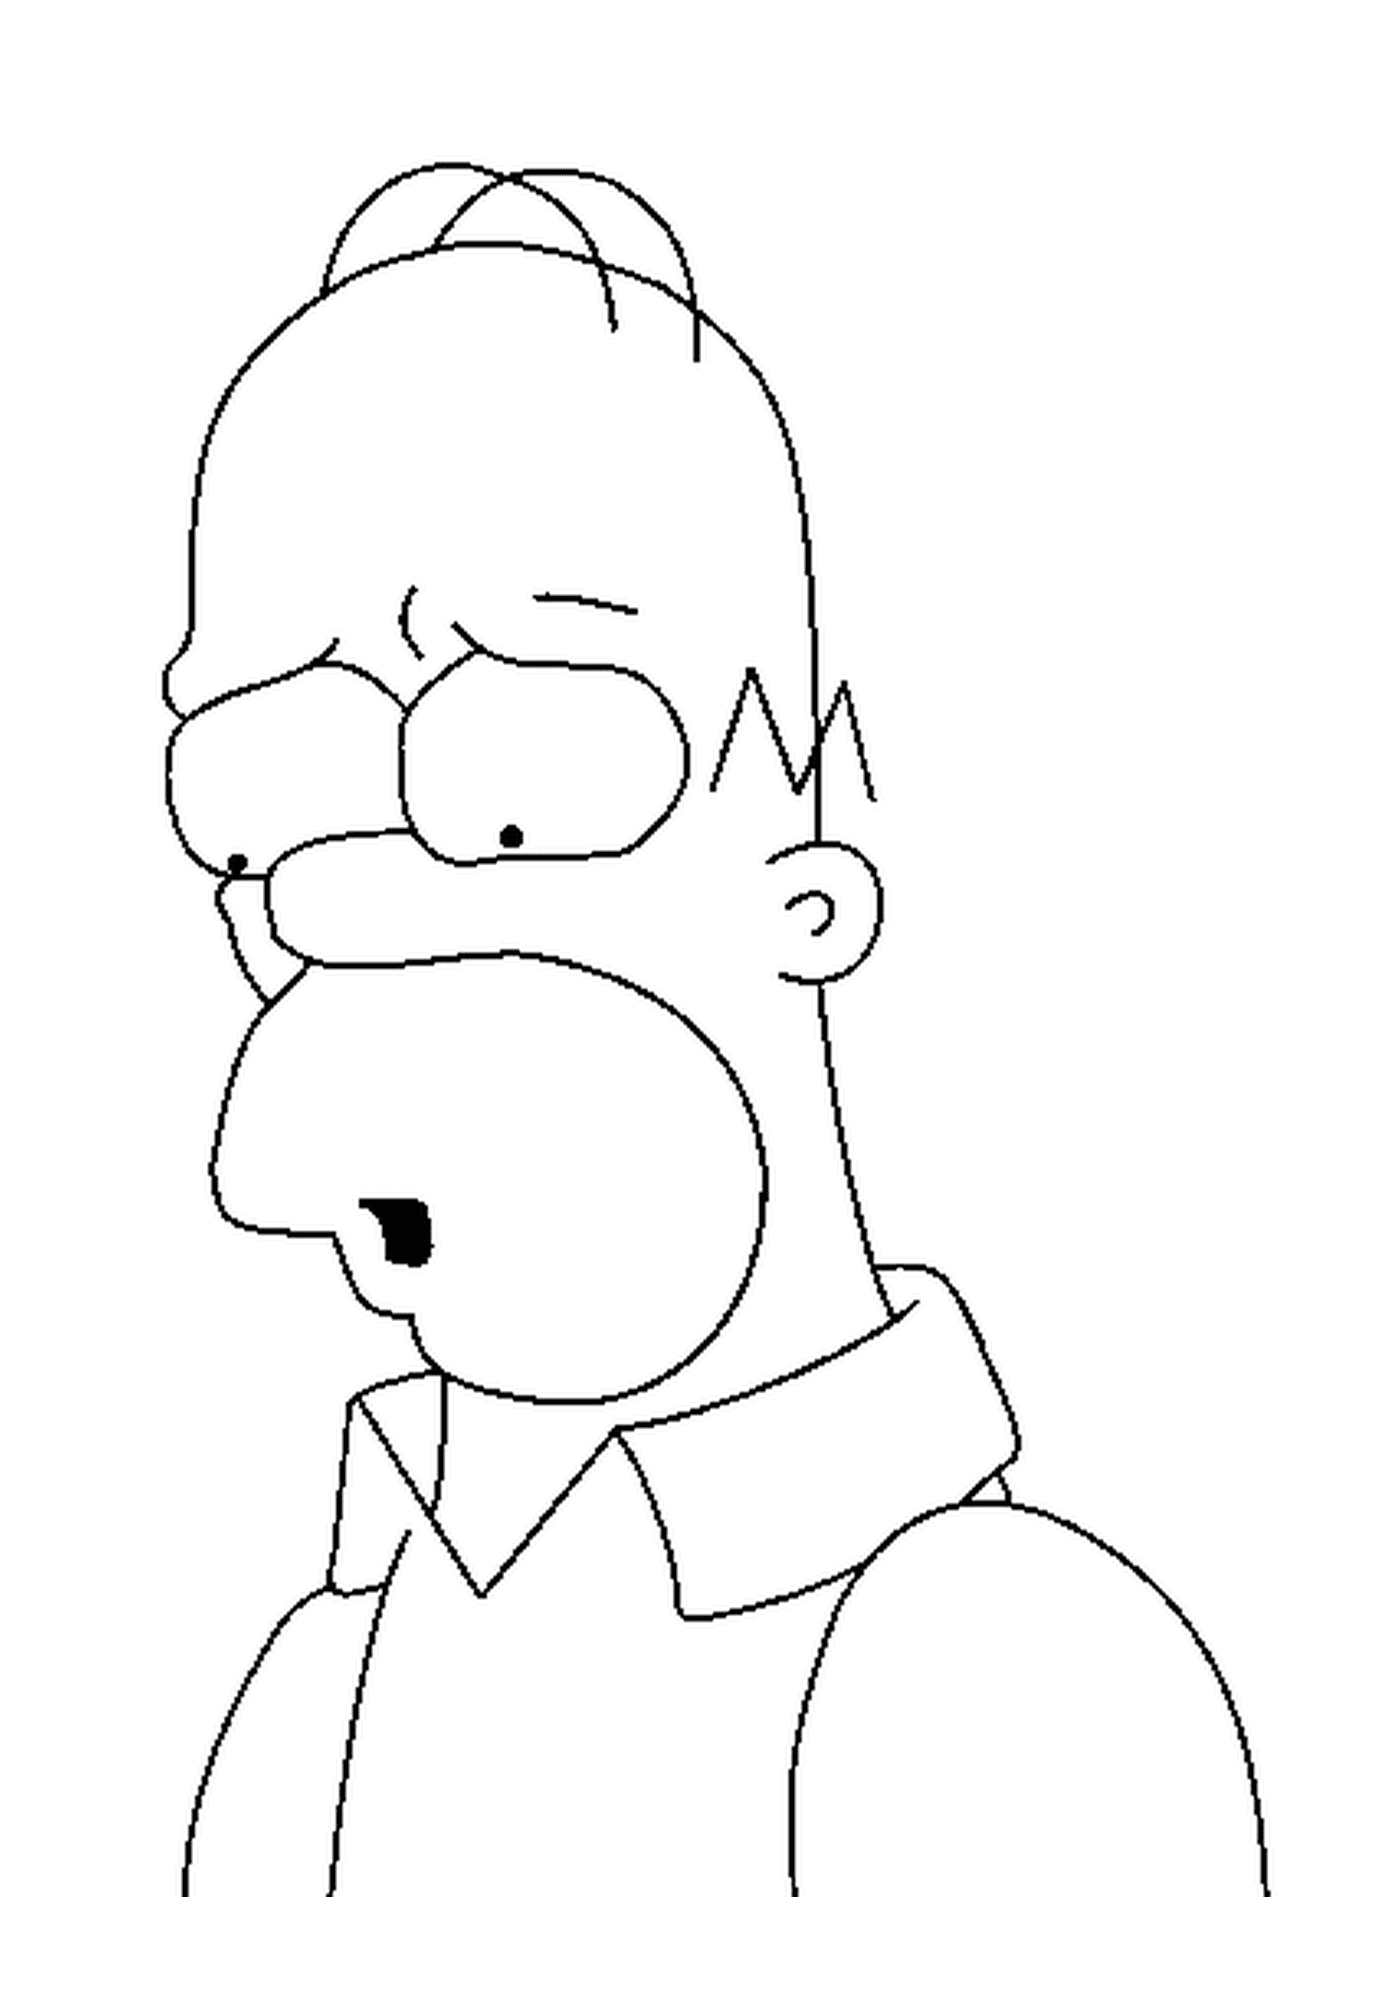  霍默·辛普森,悲伤的脸庞 